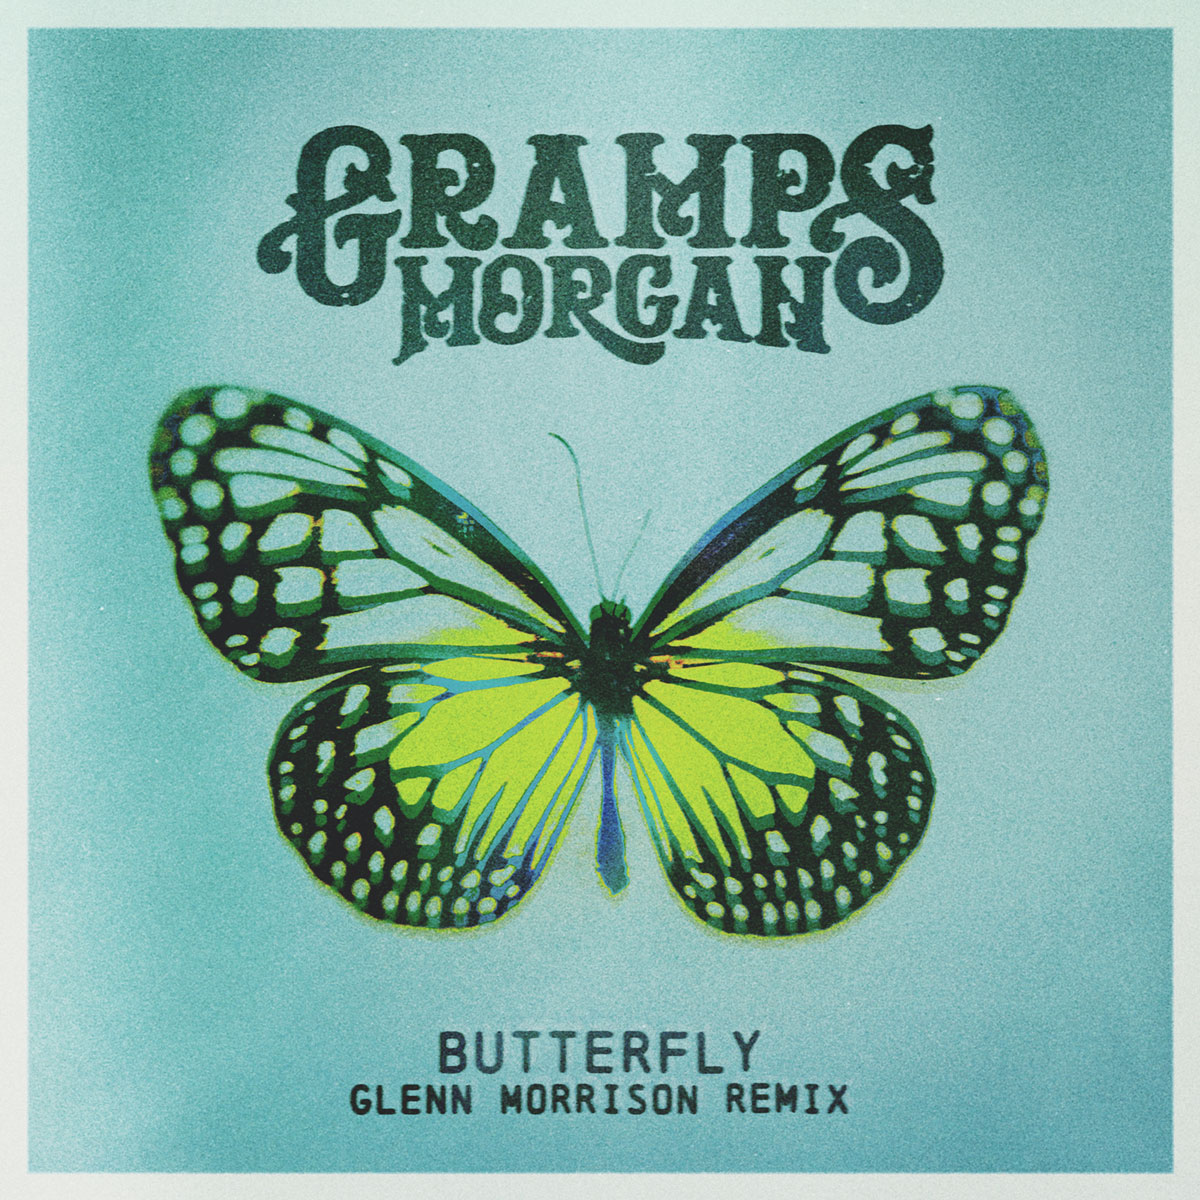 Butterfly Glenn Morrison Remix album cover